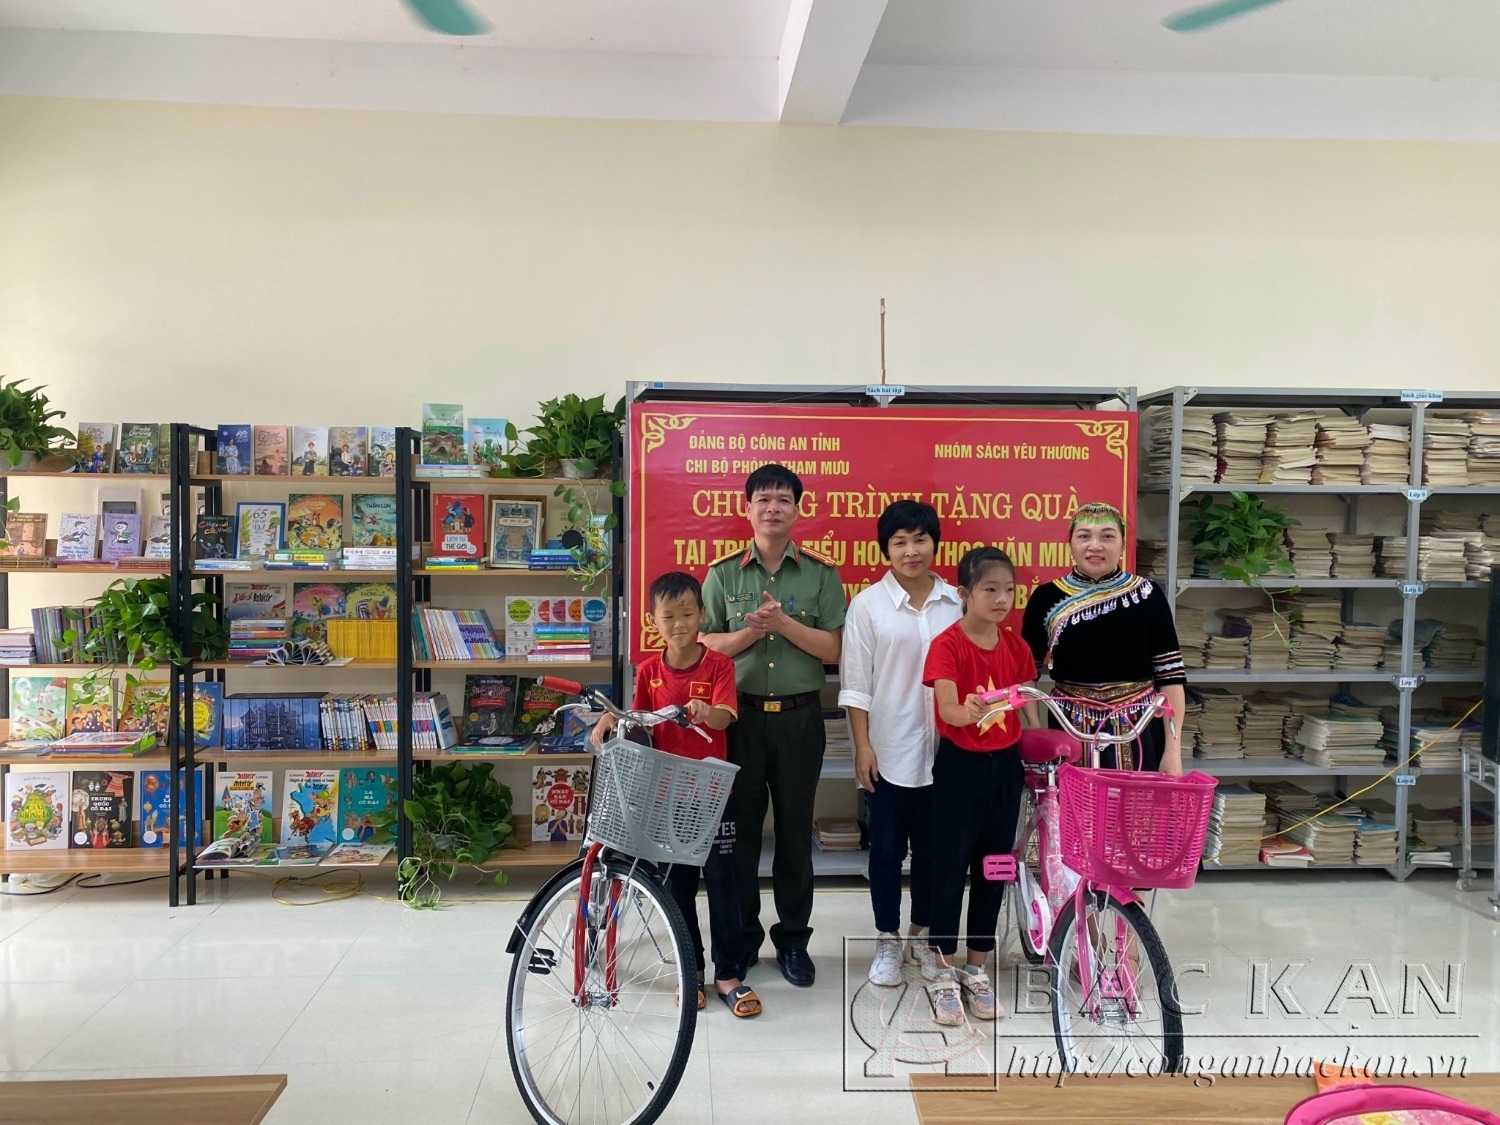 Trung tá Vũ Đức Toàn, phó trưởng Phòng Tham mưu và đại diện nhóm " Sách yêu thương" tặng xe đạp cho 2 em học sinh